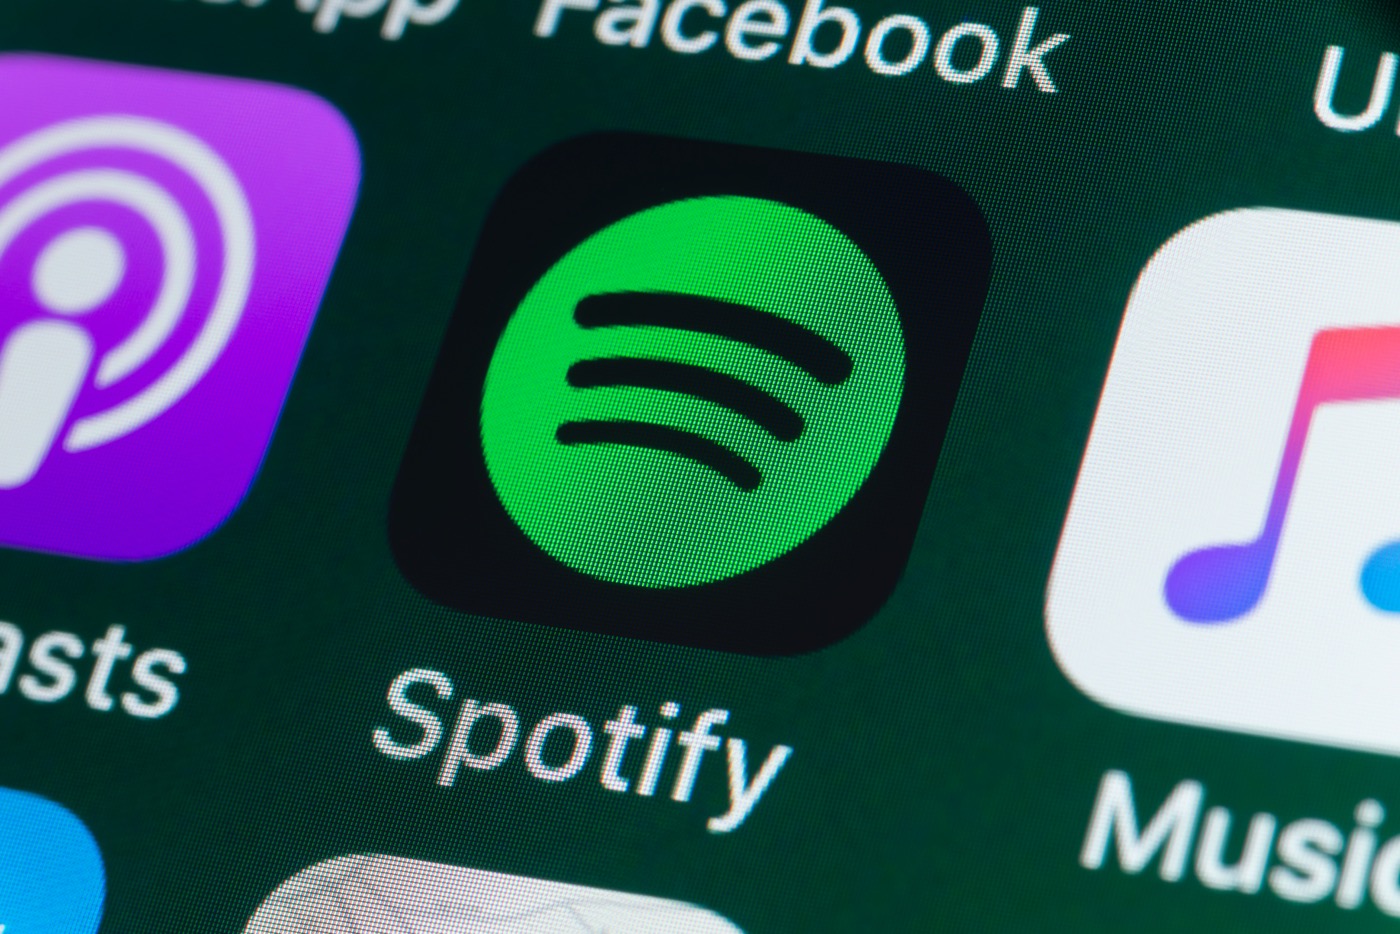 Spotify surpasses 500 million user mark